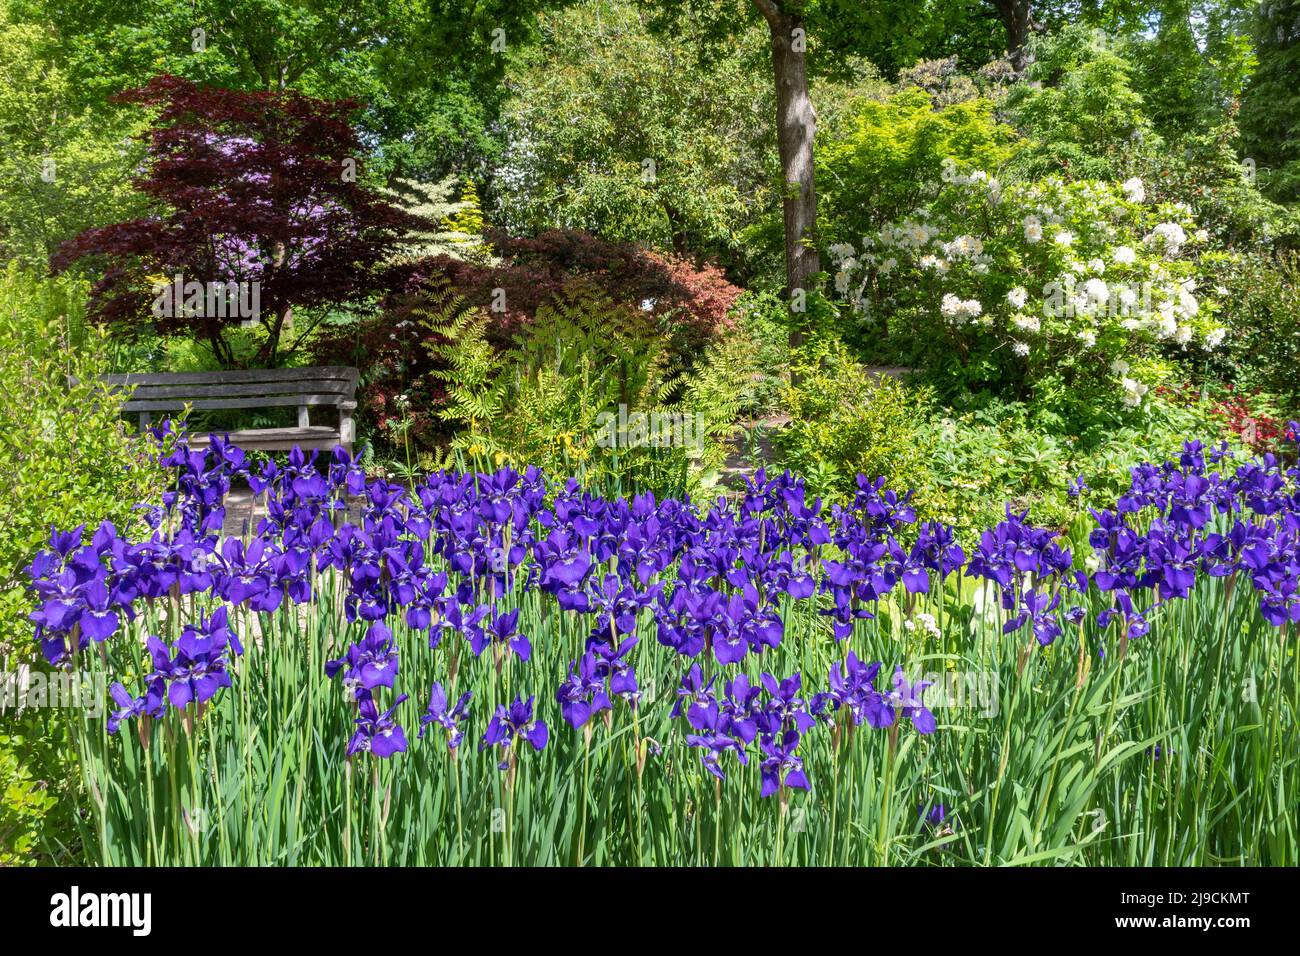 RHS Wisley Garden, vista del Rock Garden durante mayo o finales de la primavera, Surrey, Inglaterra, Reino Unido, con flores y arbustos púrpura de Iris 'Caesar's Brother' Foto de stock